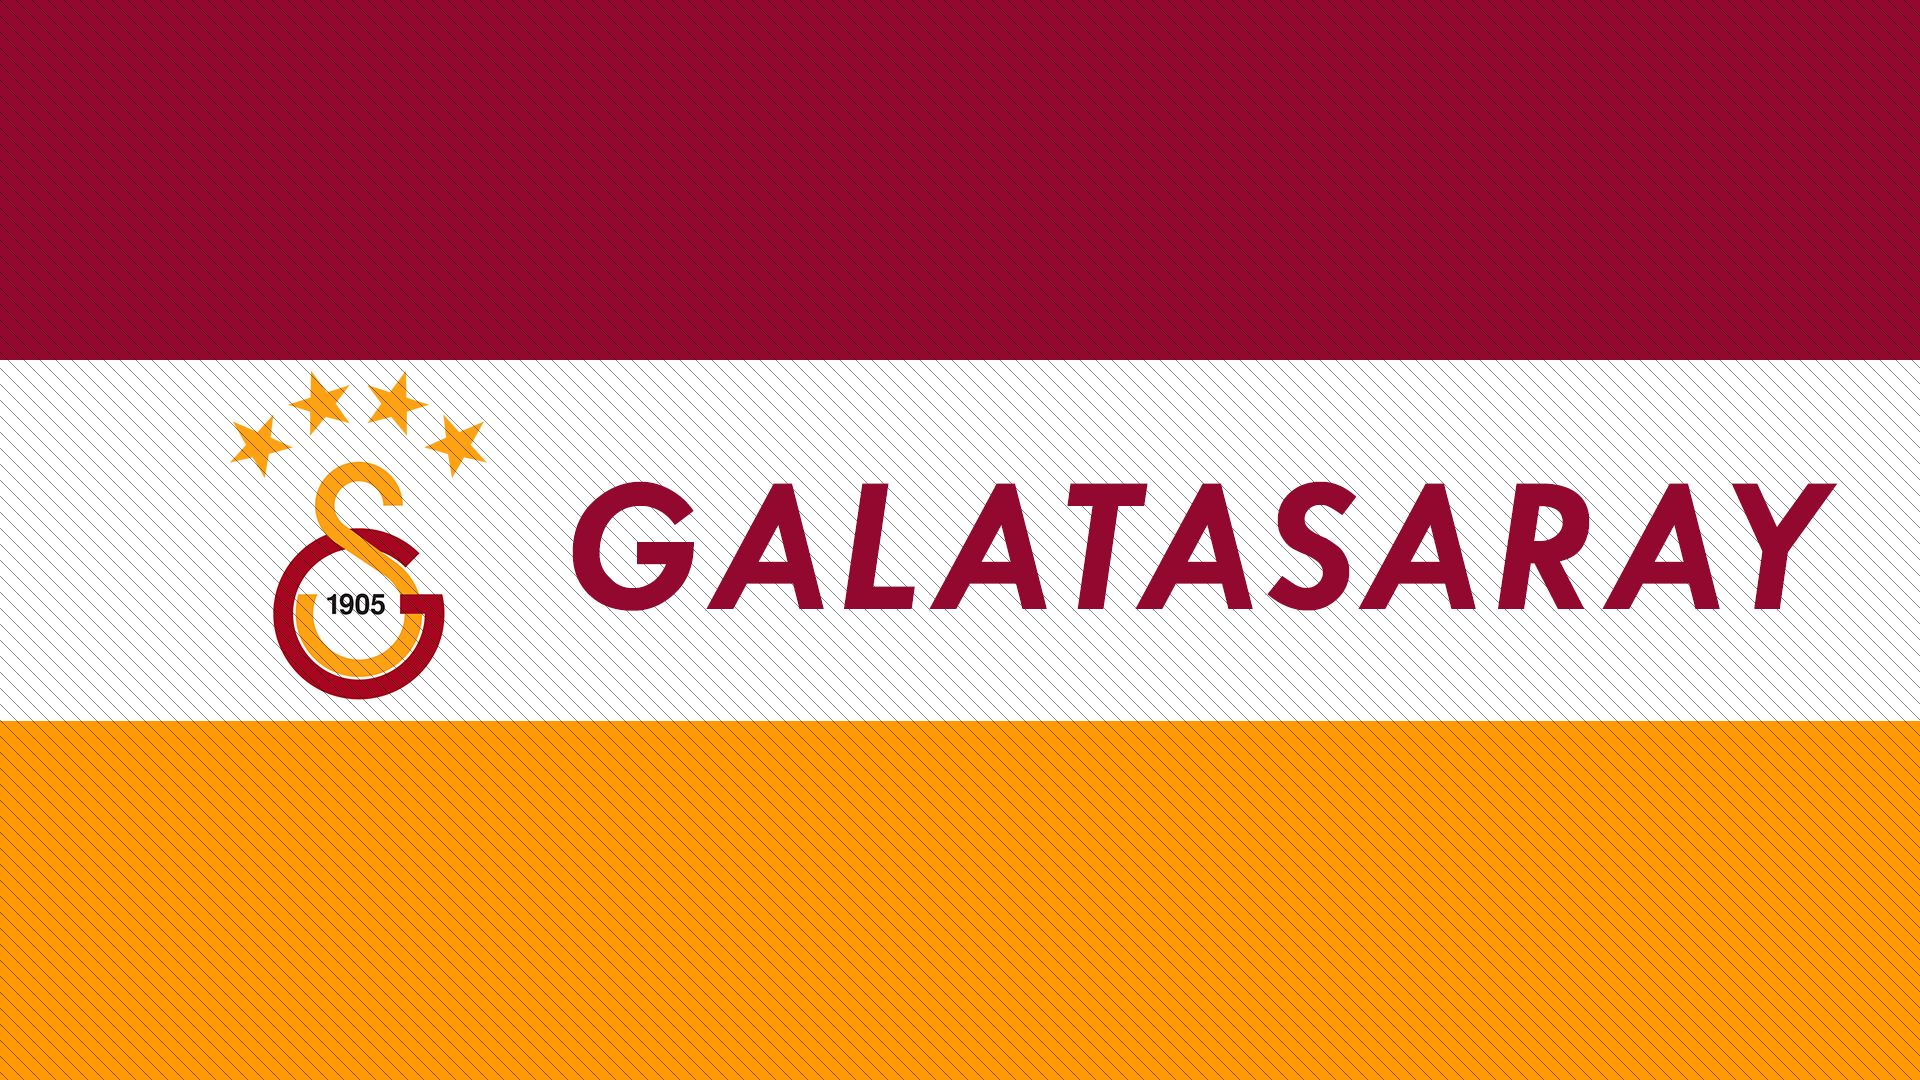 Galatasaray S K 1905 Year Logo 1920x1080